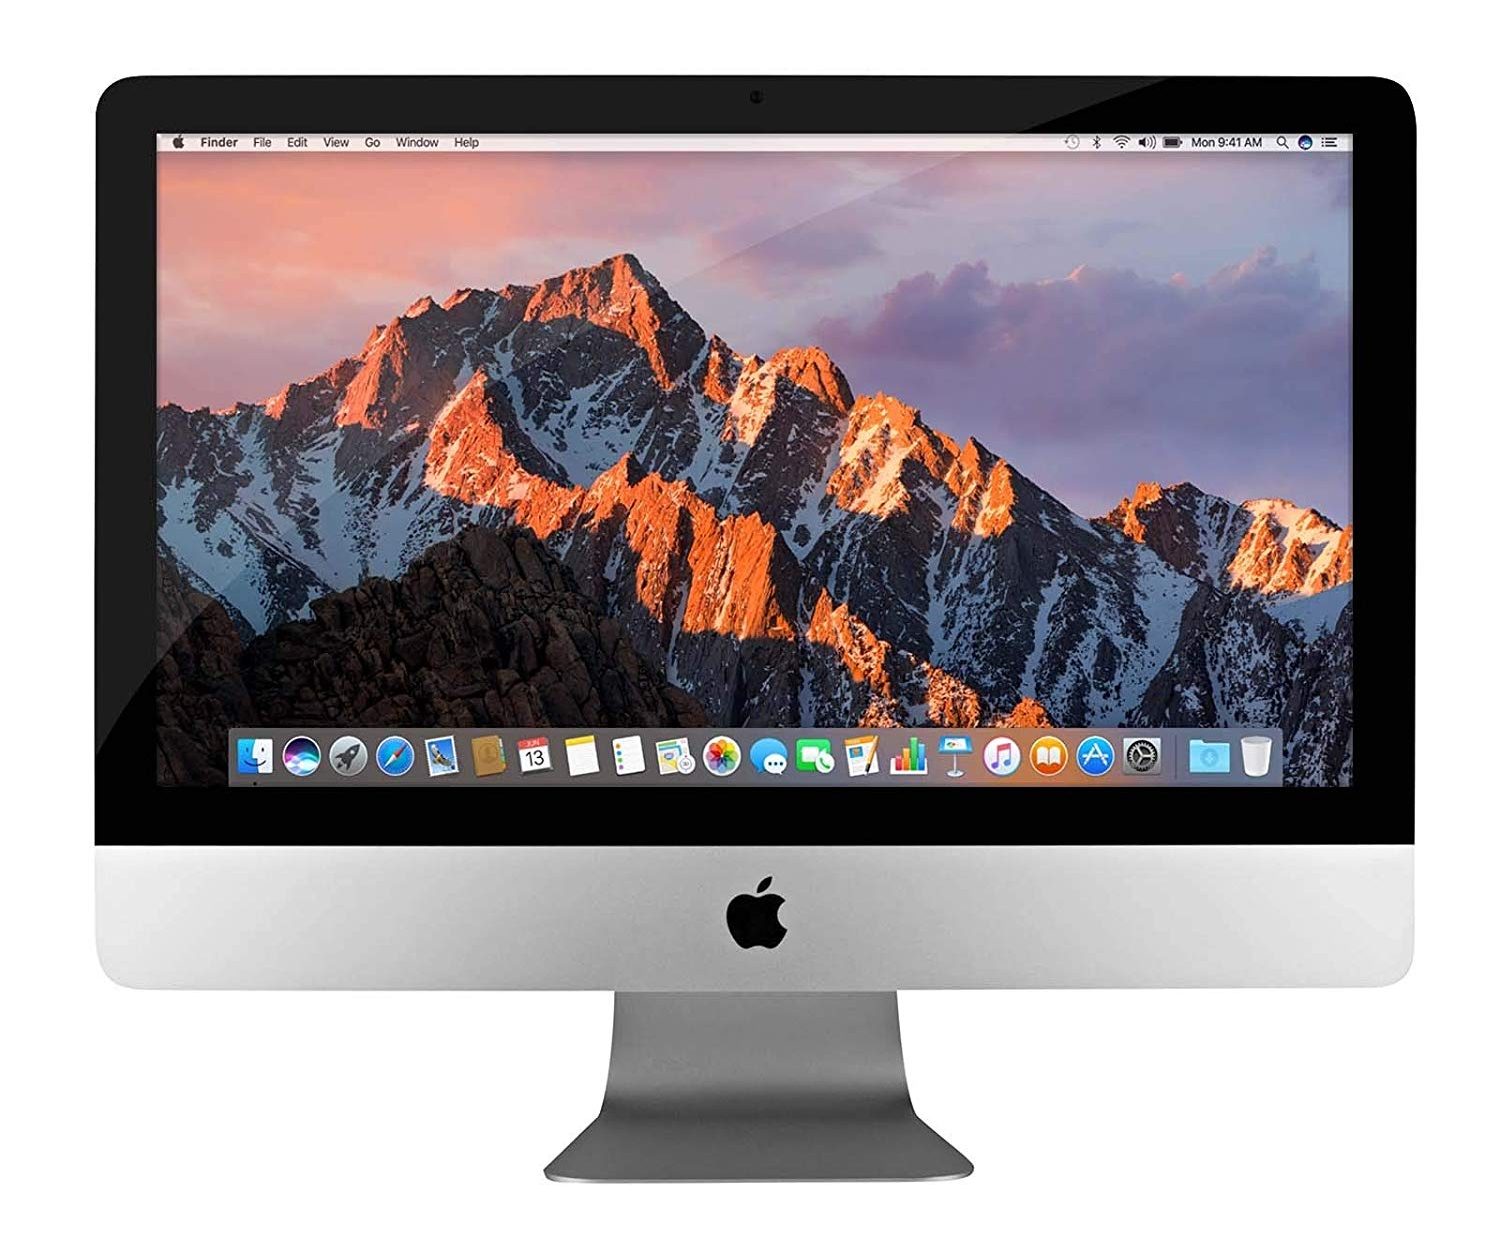 Apple Classifies Early 2013 21.5-inch iMac as Obsolete 1